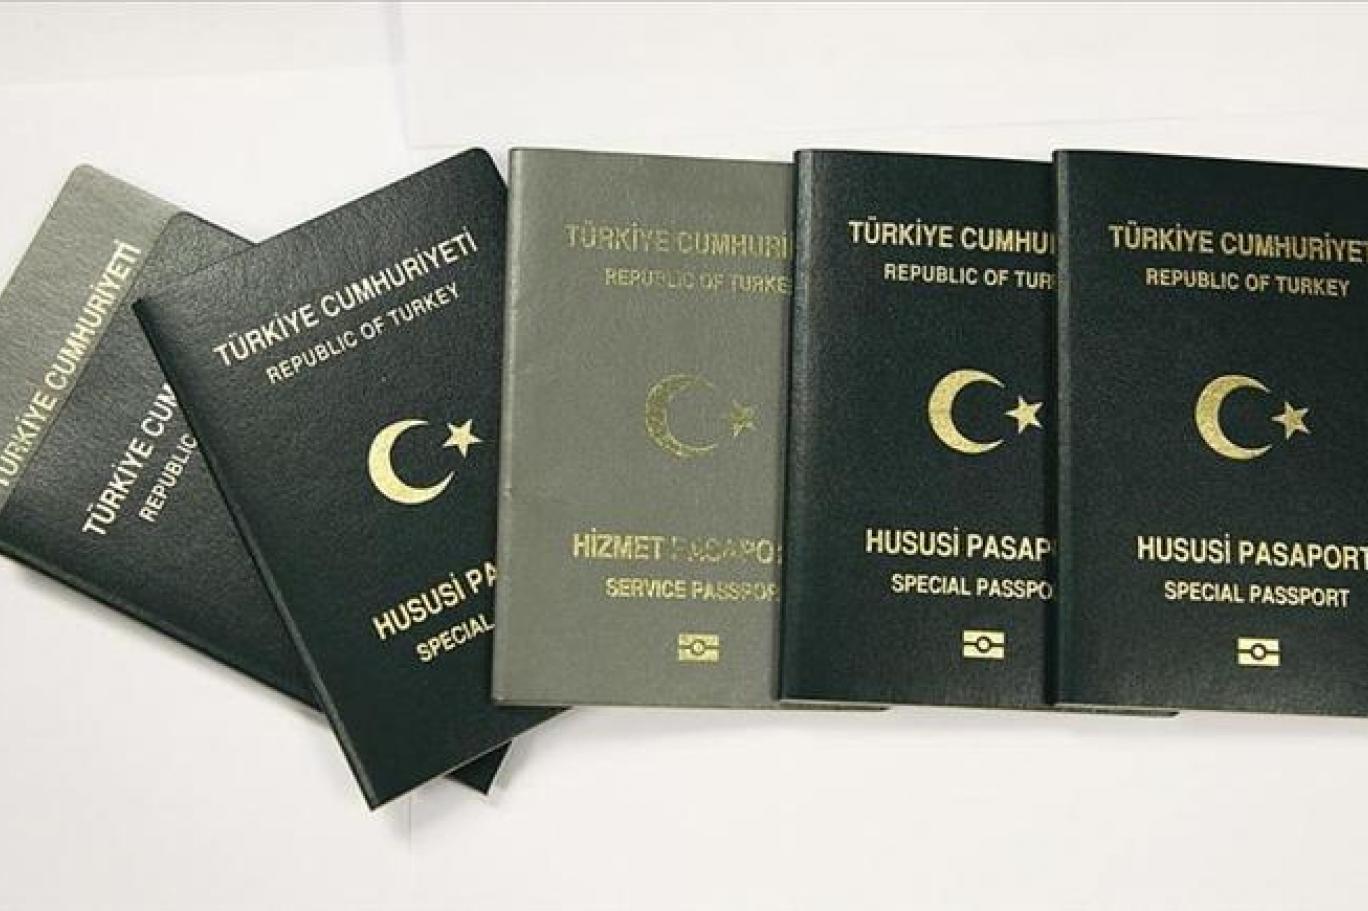 almanya da gorev yapan eski konsolos yardimcisindan gri pasaport aciklamasi defalarca uyardik merkeze cekildik independent turkce